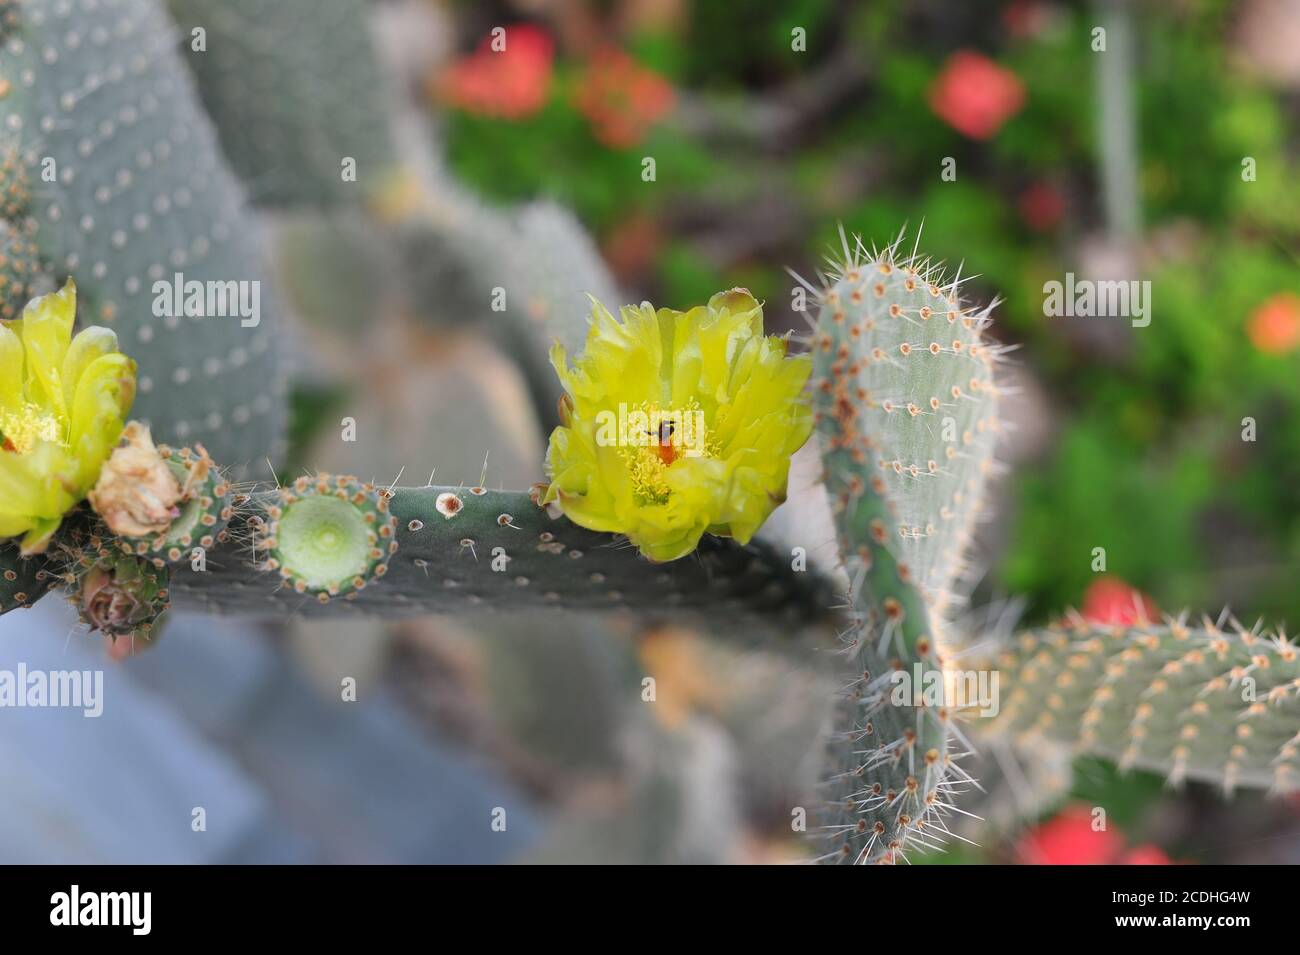 Foto eines blühenden Kaktus mit hübschen gelben Blüten in Nahaufnahme im botanischen Garten. Stockfoto